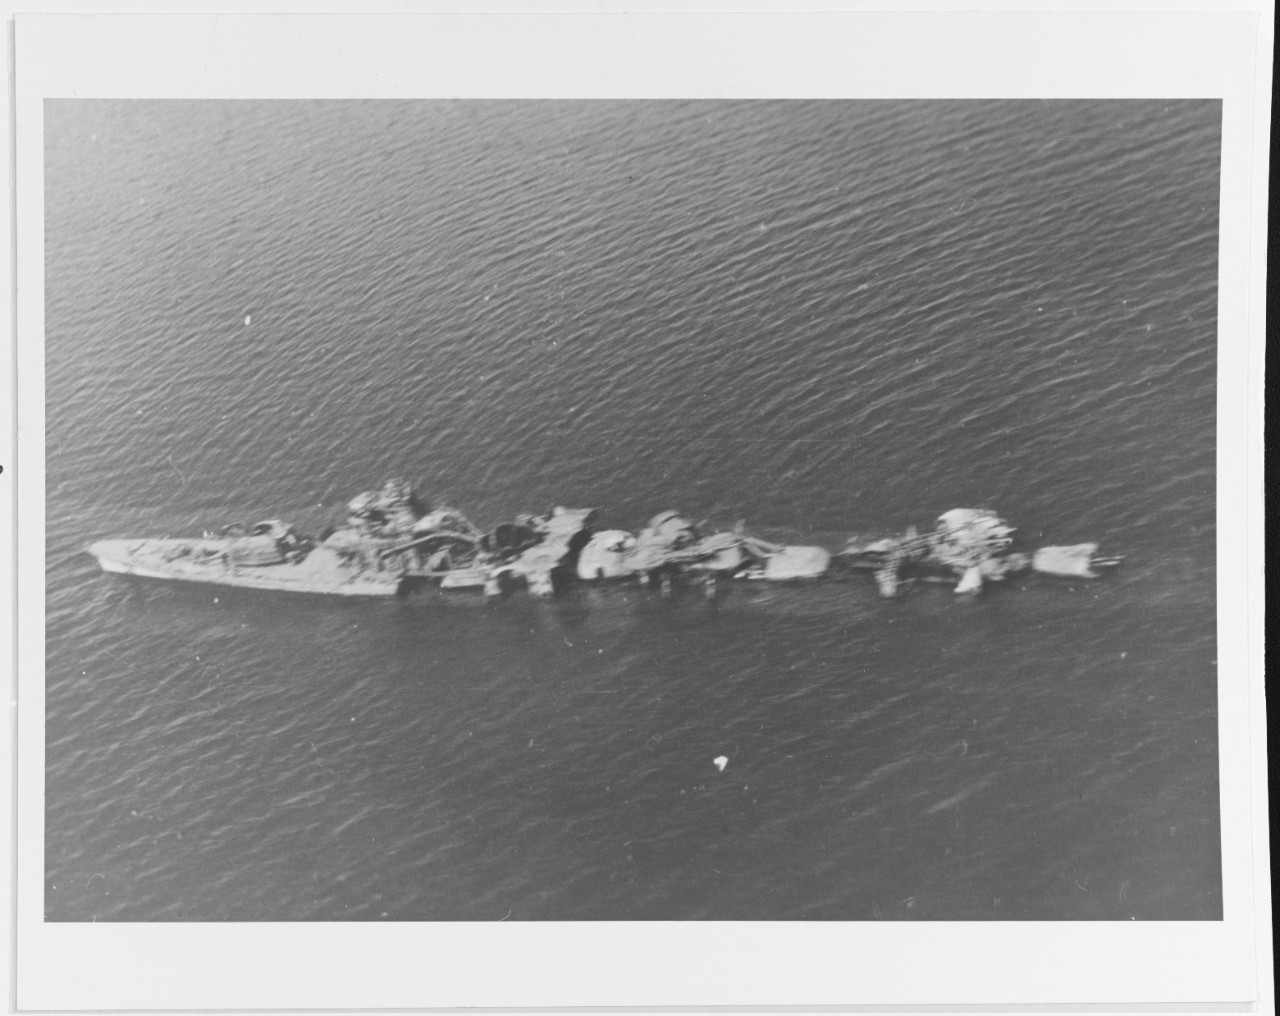 Destroyed OKINAMI (Japanese destroyer)